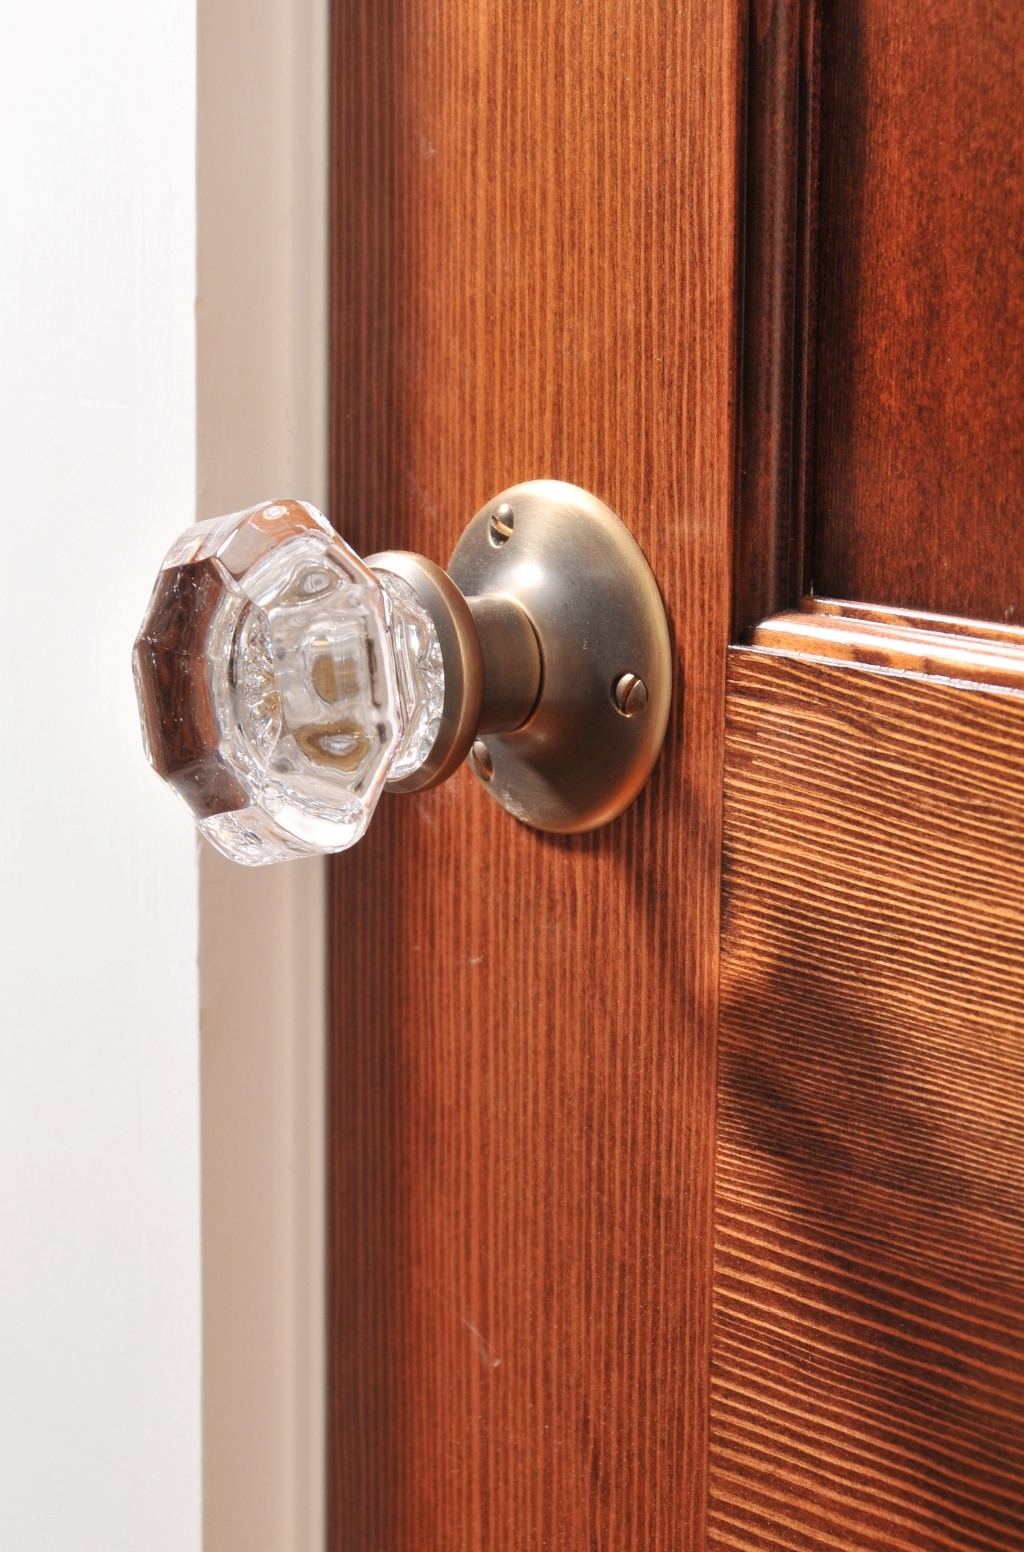 Closeup of glass doorknob on wooden door